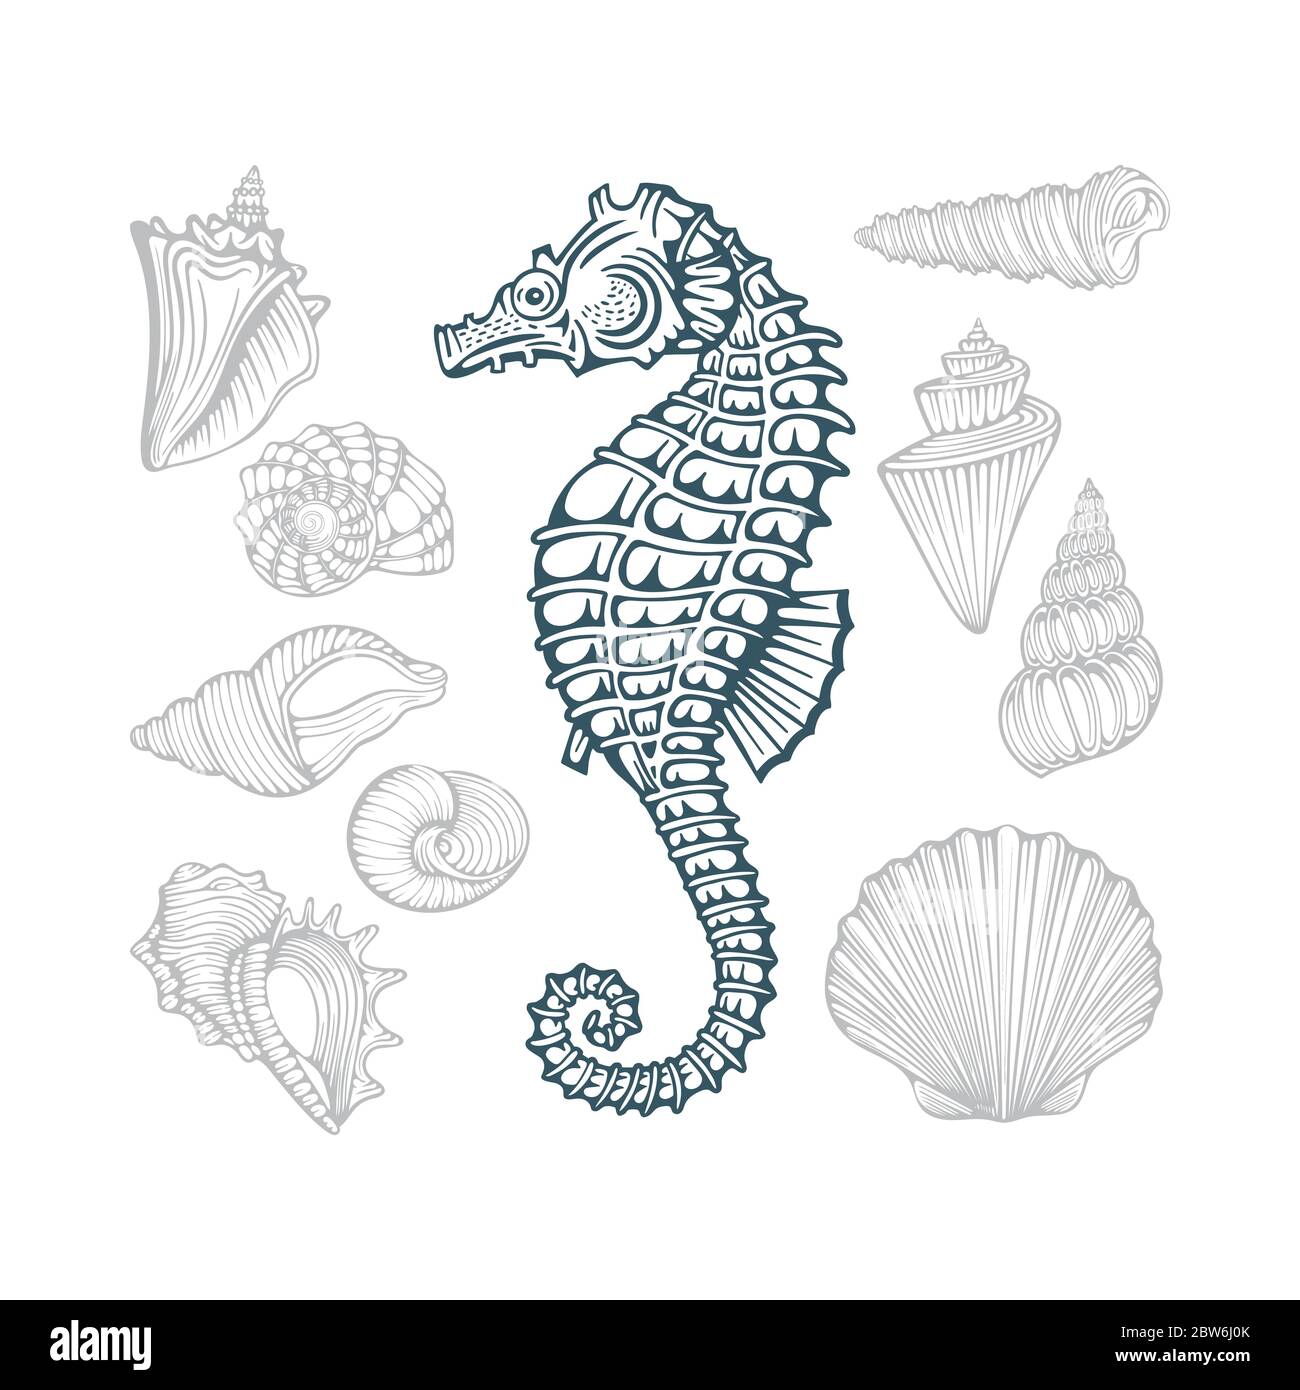 Seepferdchen und Seashells. Verschiedene Muscheln Hand gezeichnete Vektor-Illustrationen gesetzt. Teil des Sets. Stock Vektor